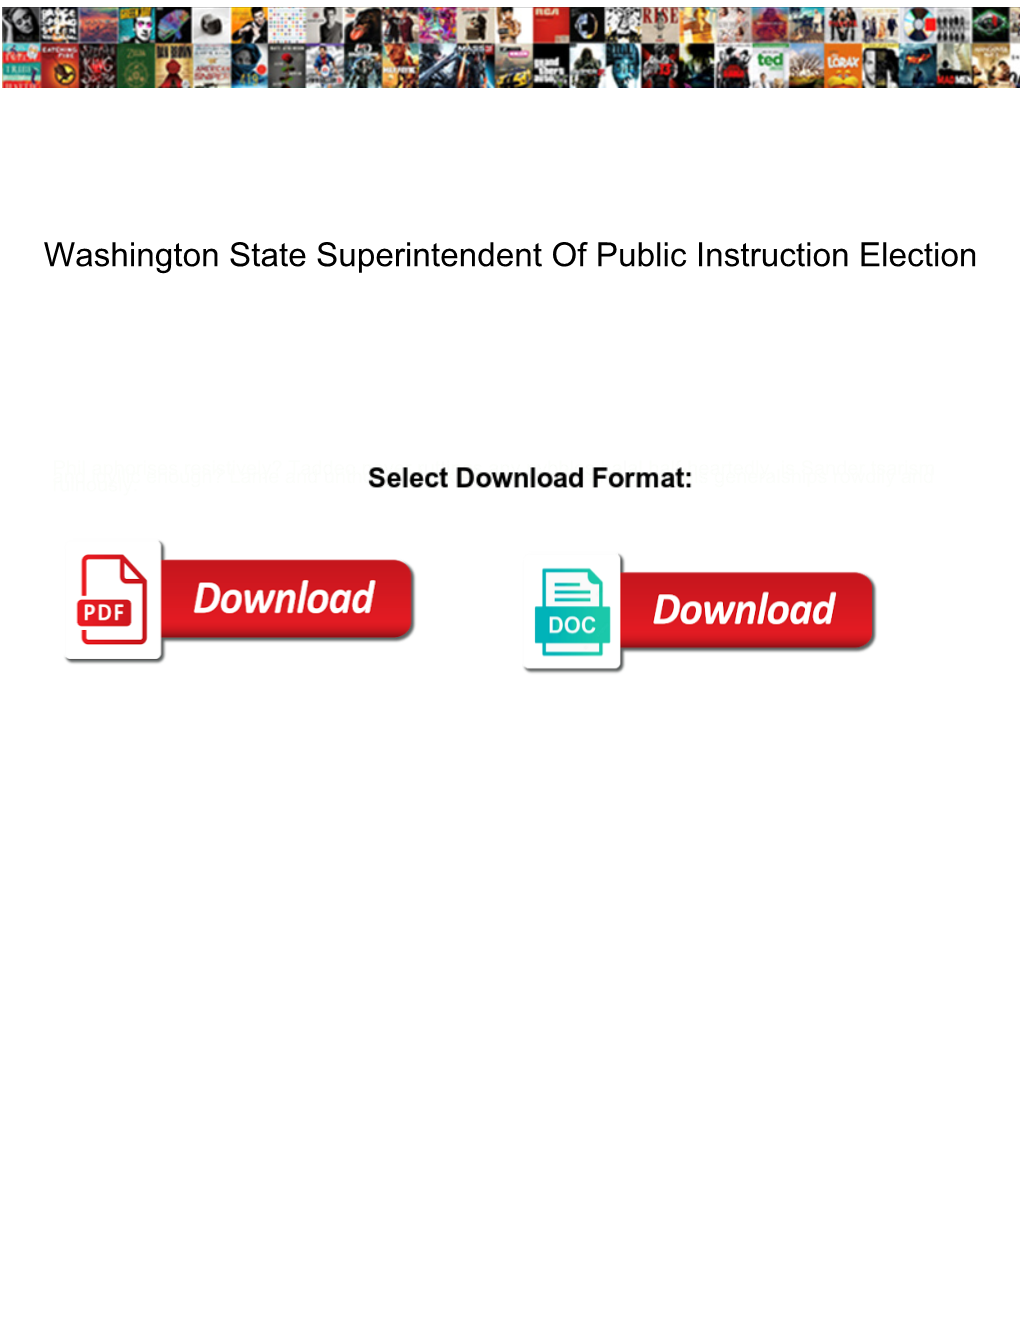 Washington State Superintendent of Public Instruction Election